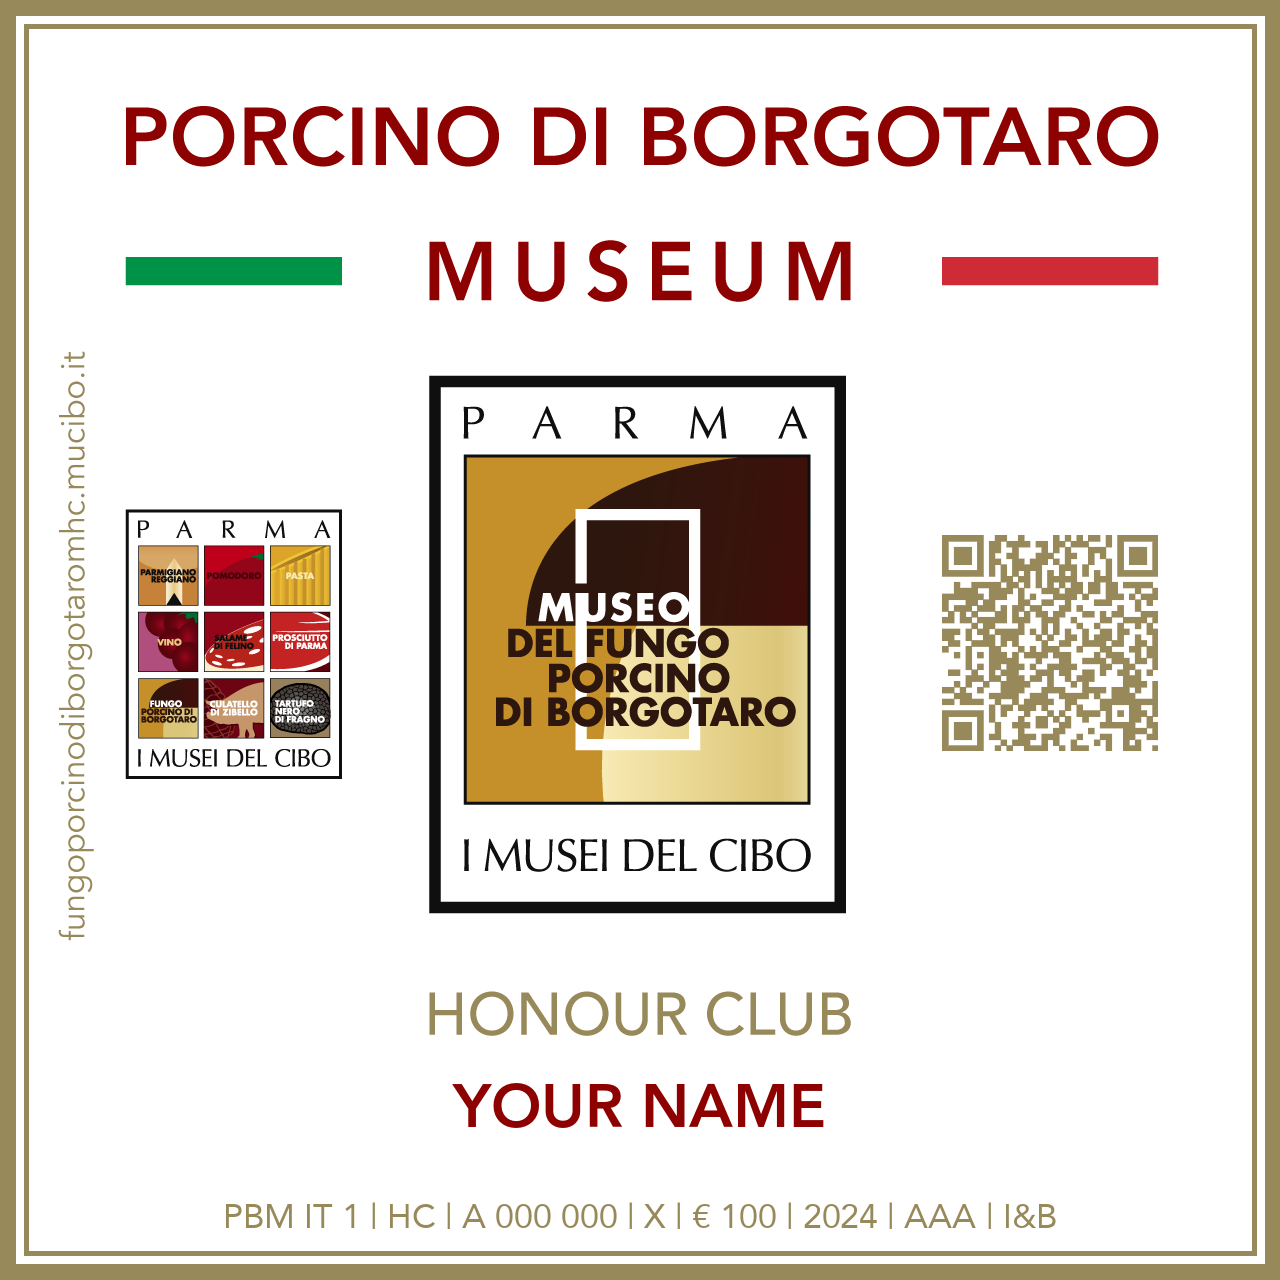 Fungo Porcino di Borgotaro Museum Honour Club - Token - IL TUO NOME